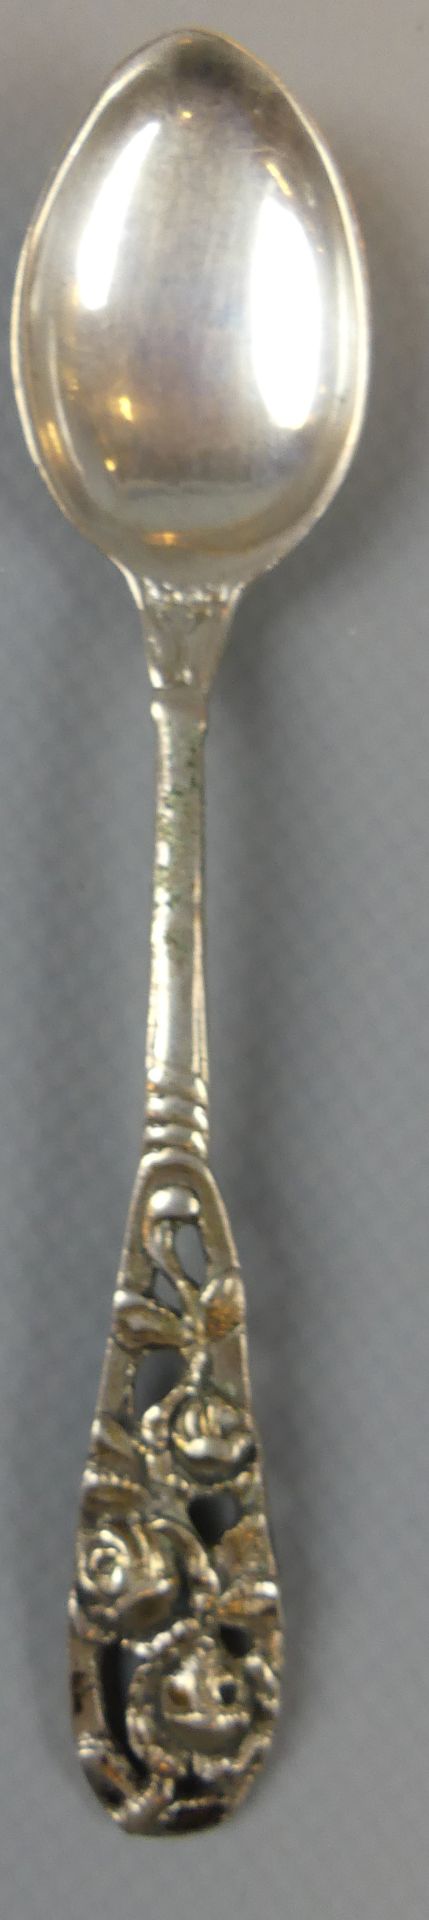 Konvolut Hildesheimer Rose, 800er Silber, 5 Löffel, Spickgabel, ca. 77g. - Bild 2 aus 3